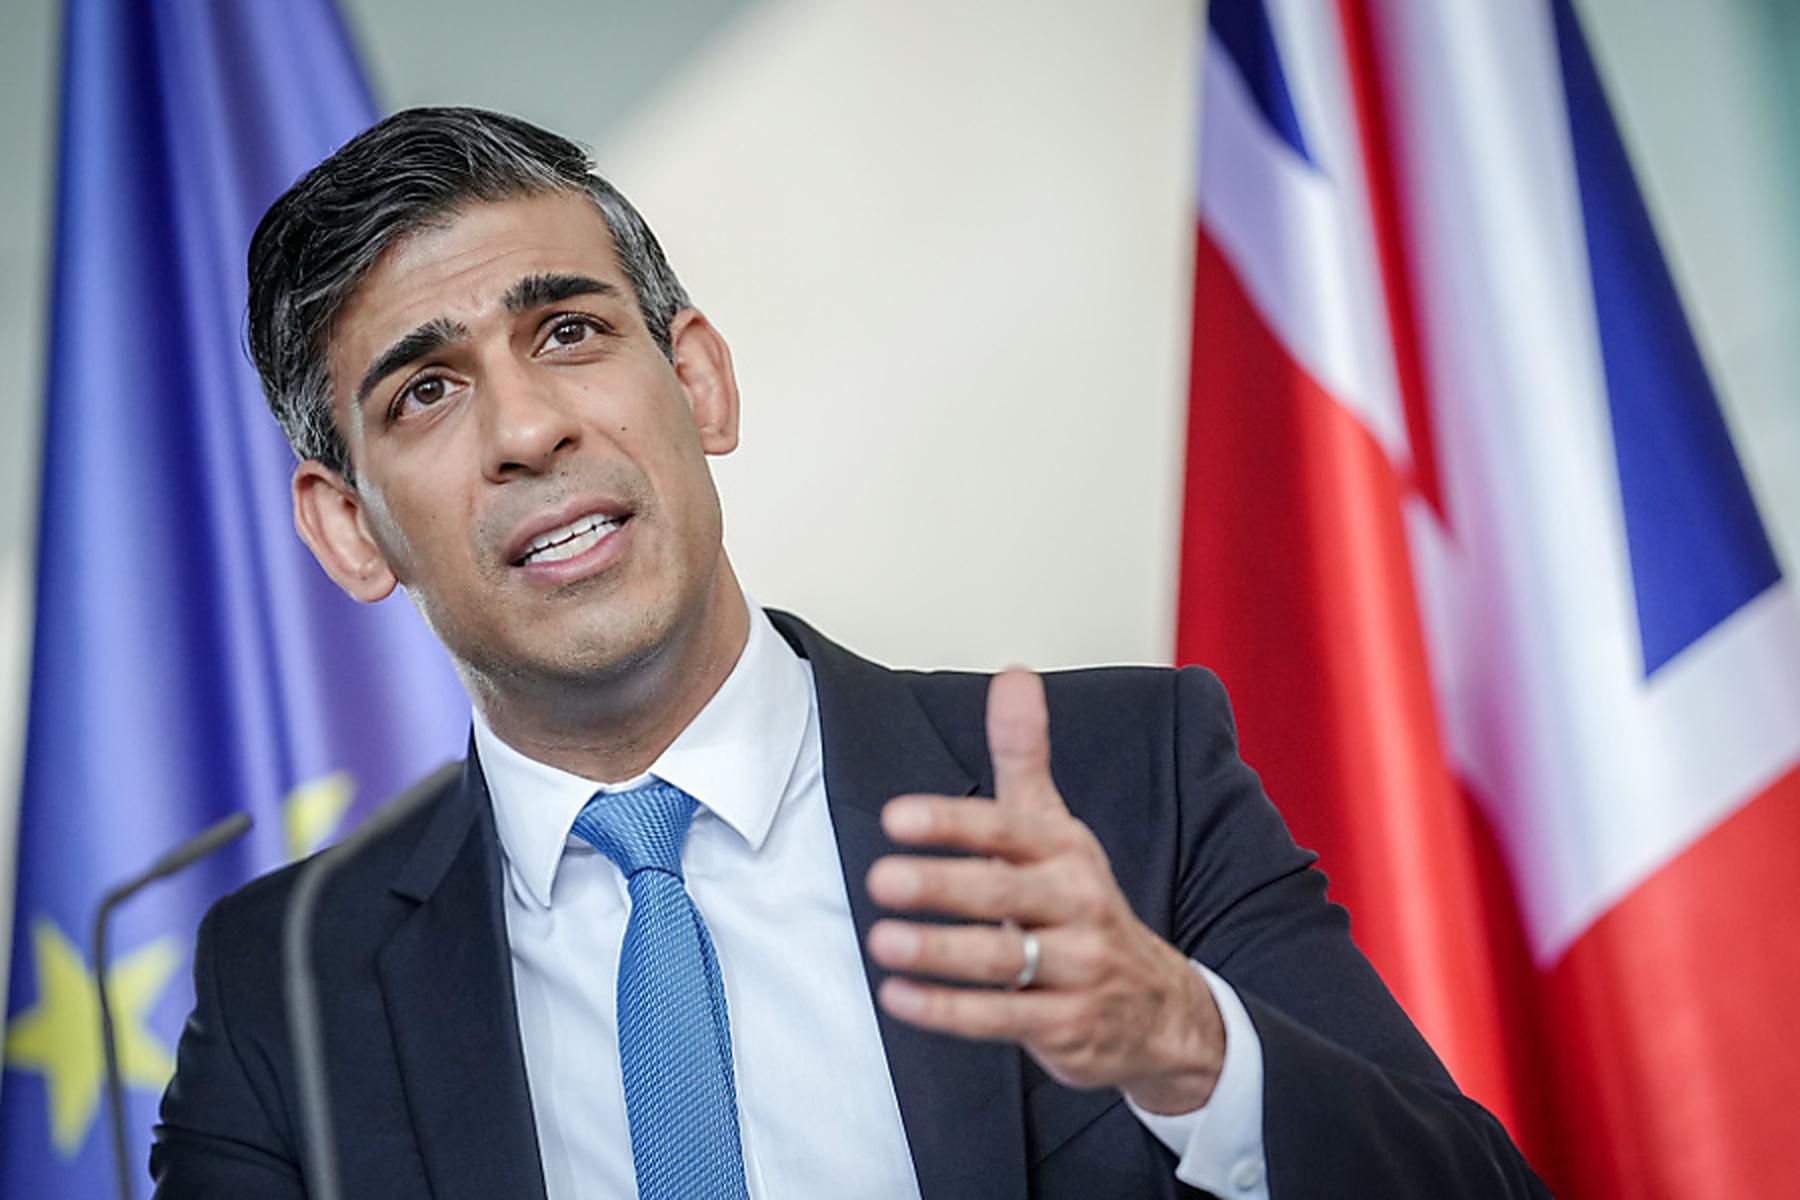 London: Sunak will Parlamentswahl im Sommer nicht ausschließen